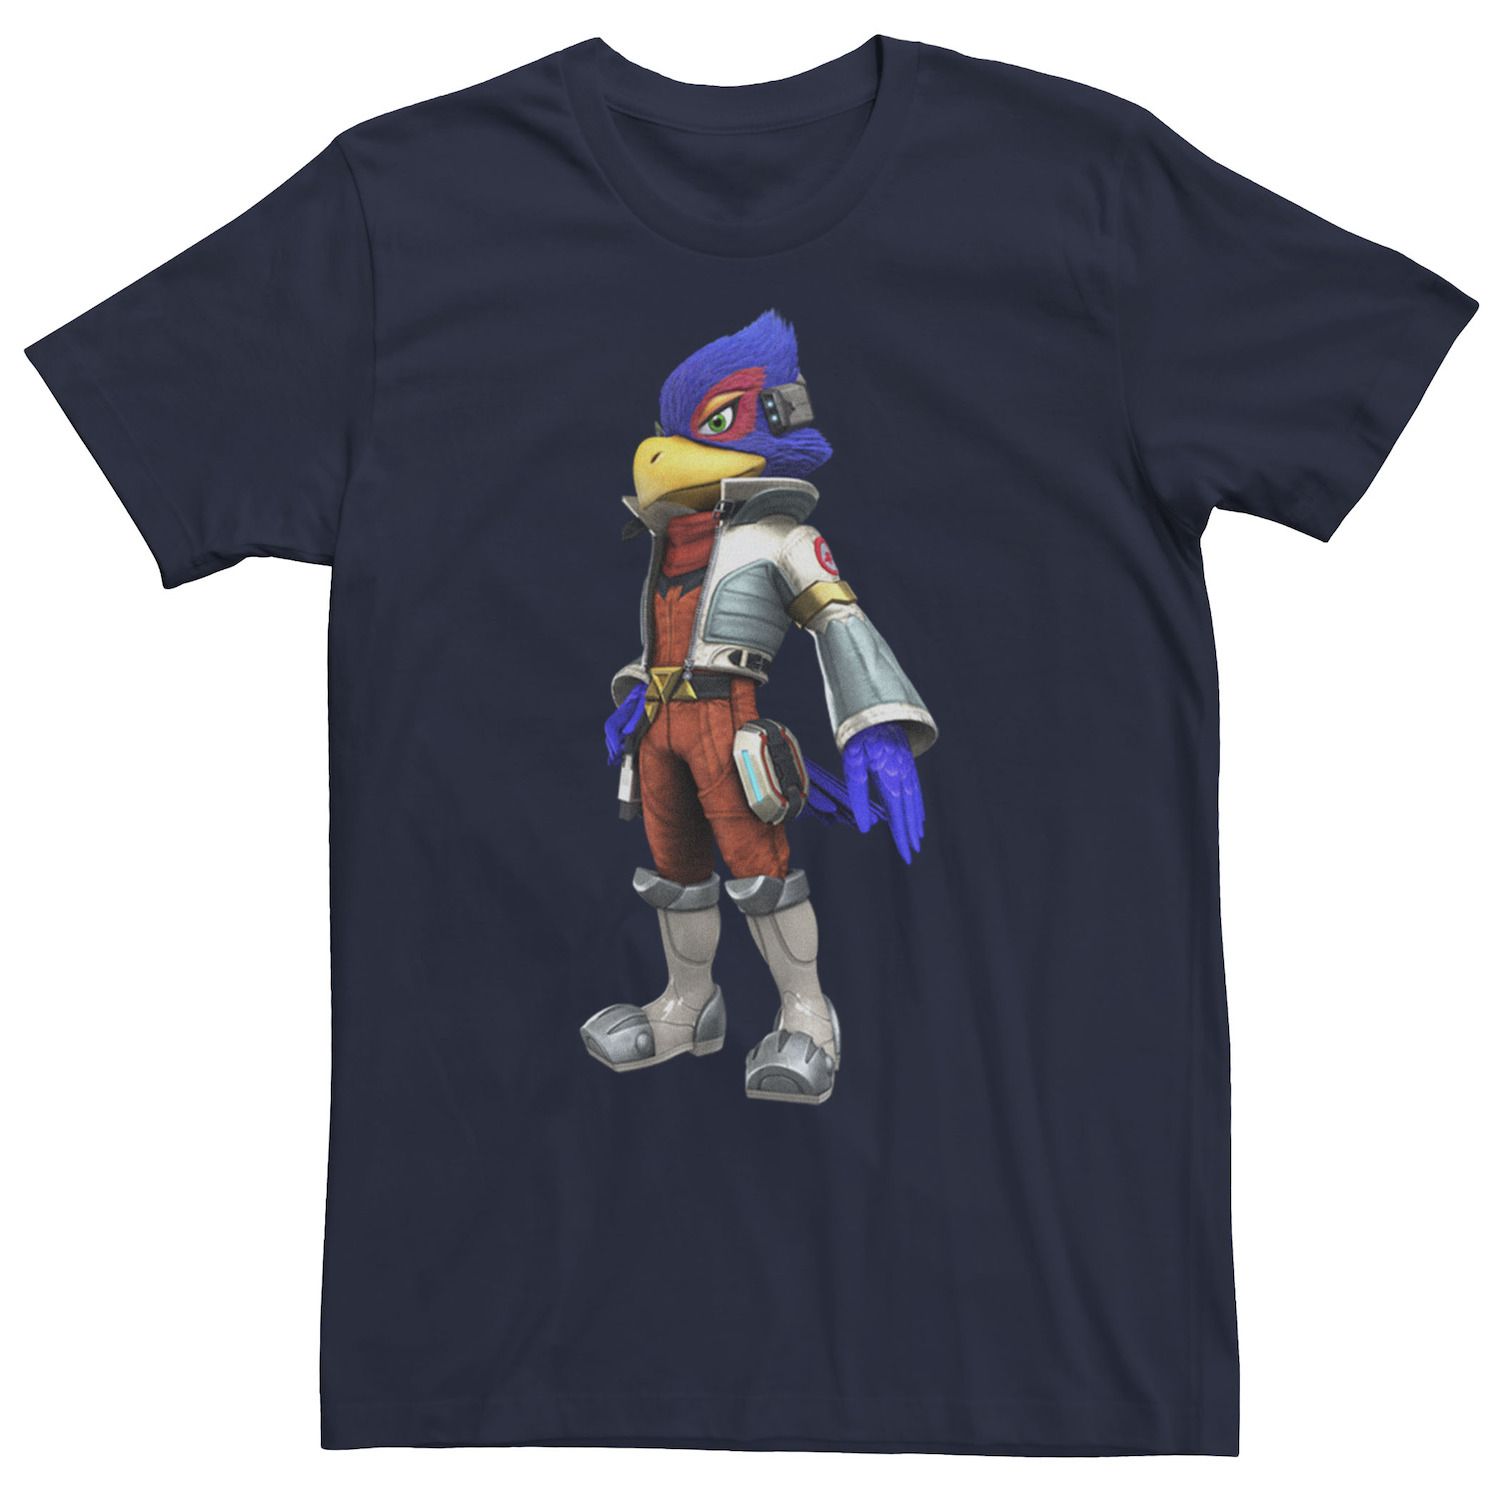 Мужская футболка с портретом Nintendo Star Fox Falco Licensed Character фото